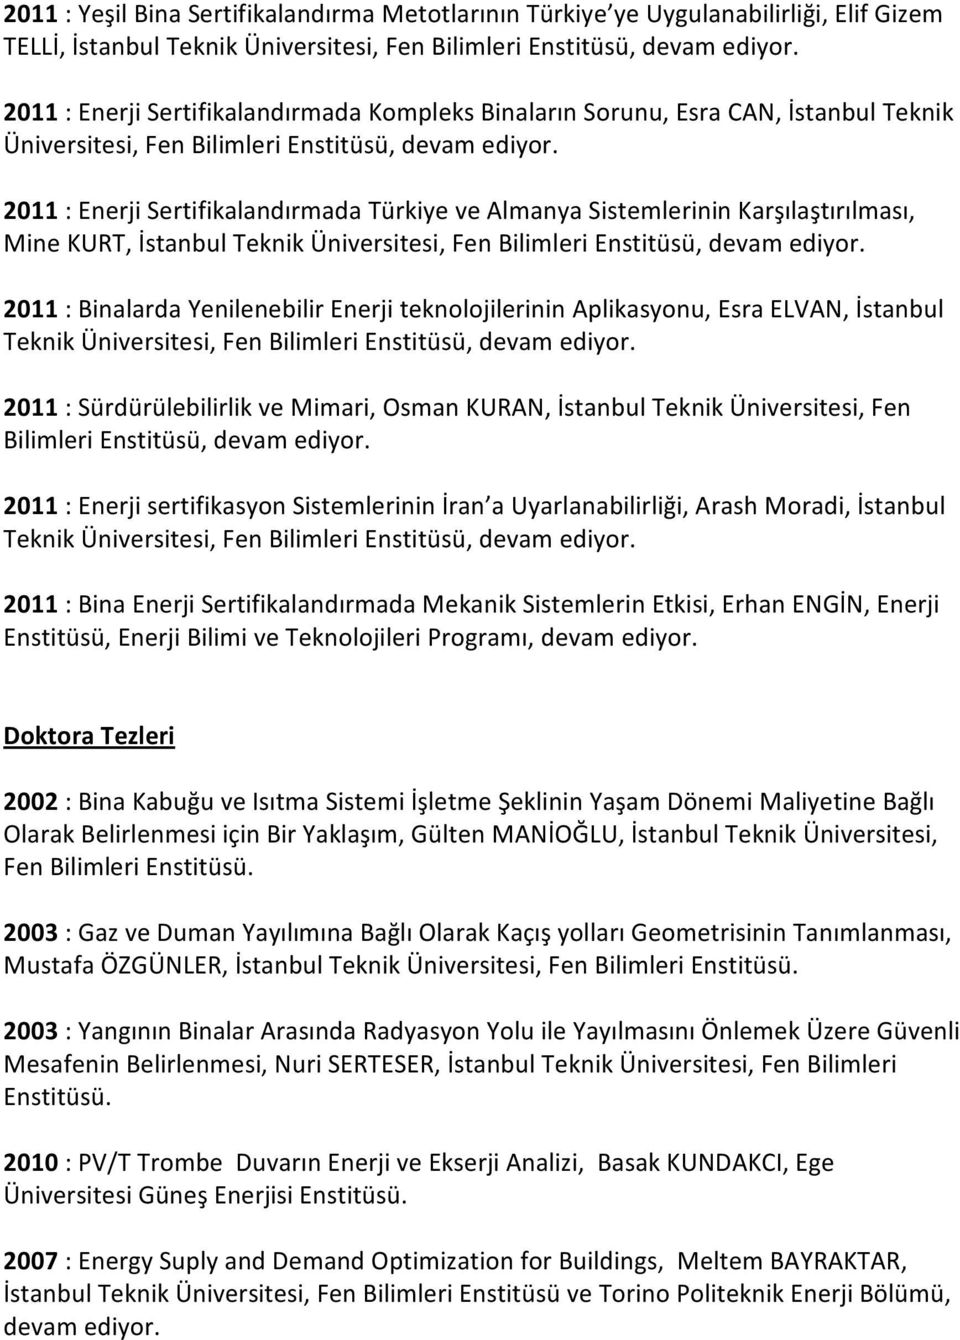 2011 : Enerji Sertifikalandırmada Türkiye ve Almanya Sistemlerinin Karşılaştırılması, Mine KURT, İstanbul Teknik Üniversitesi, Fen Bilimleri Enstitüsü, devam ediyor.